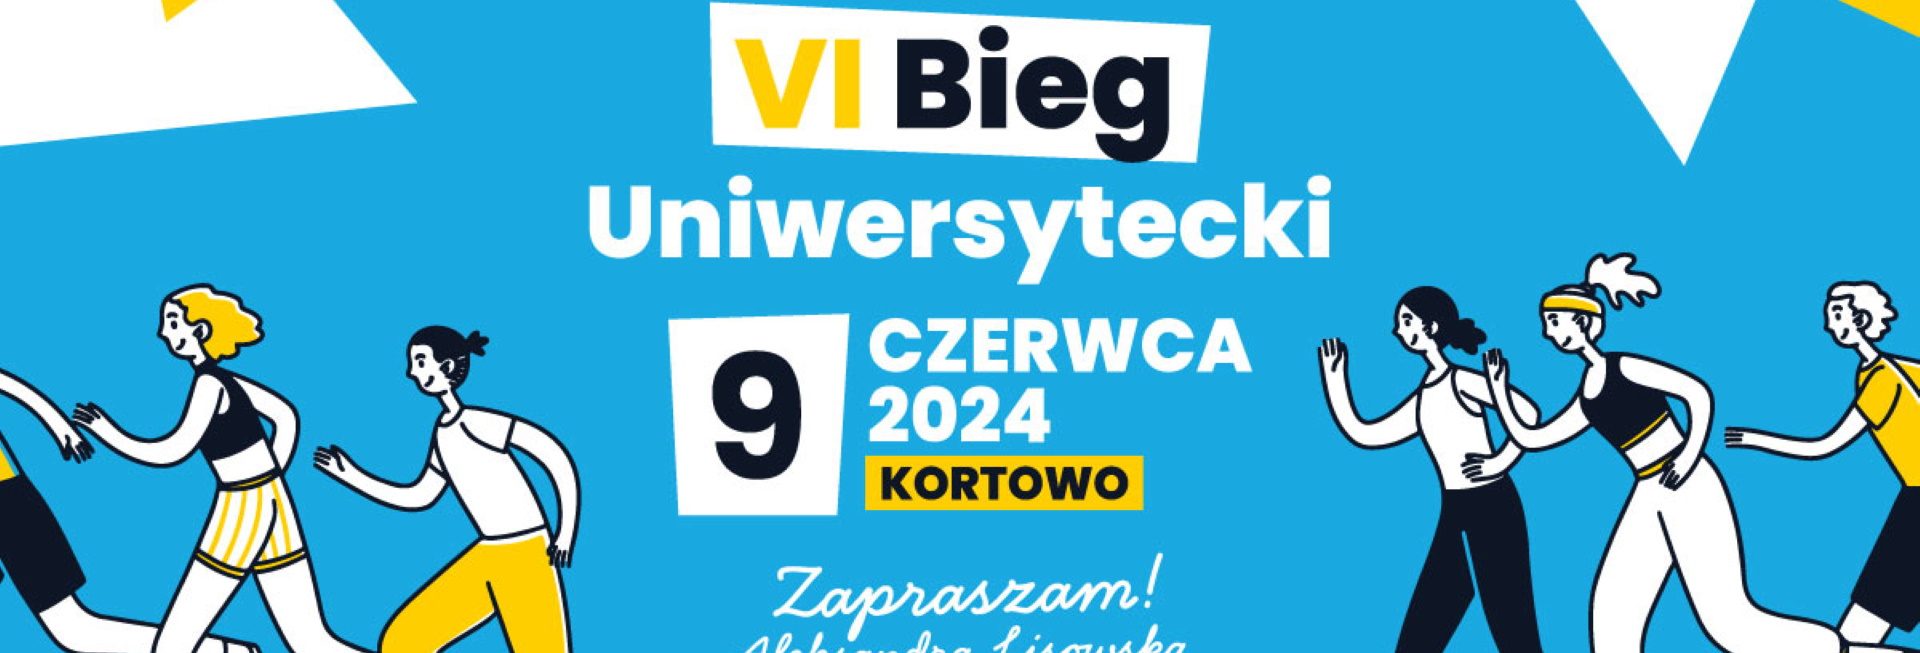 Plakat zapraszający w niedzielę 9 czerwca 2024 r. do Olsztyna na 6. edycję Biegu Uniwersyteckiego Kortowo Olsztyn 2024. 